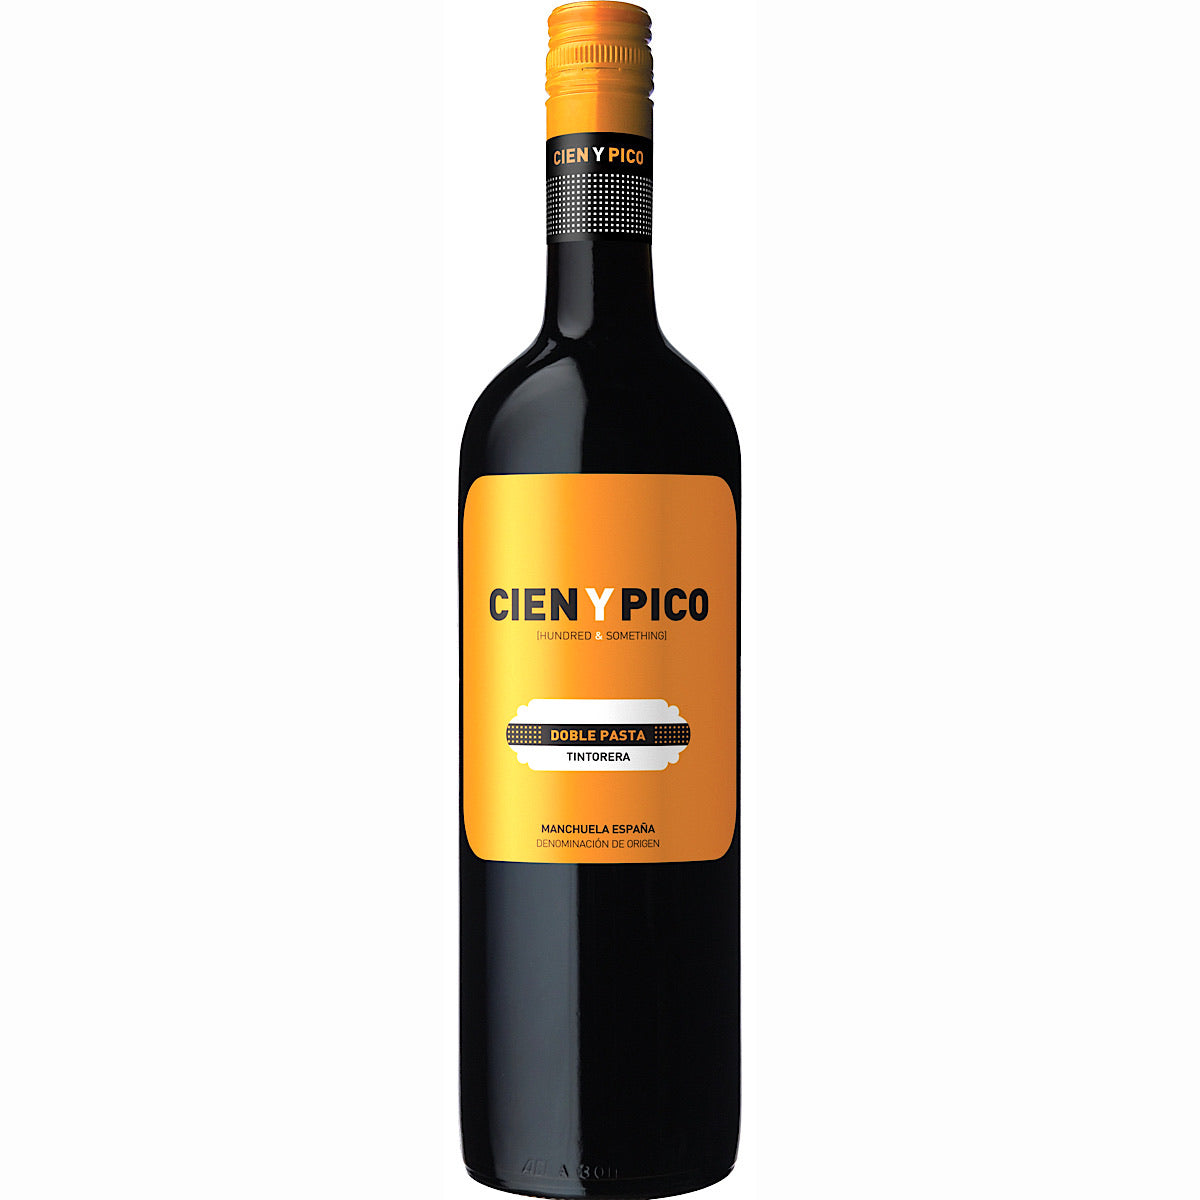 Cien y Pico Doble Pasta 6 Bottle Case 75cl